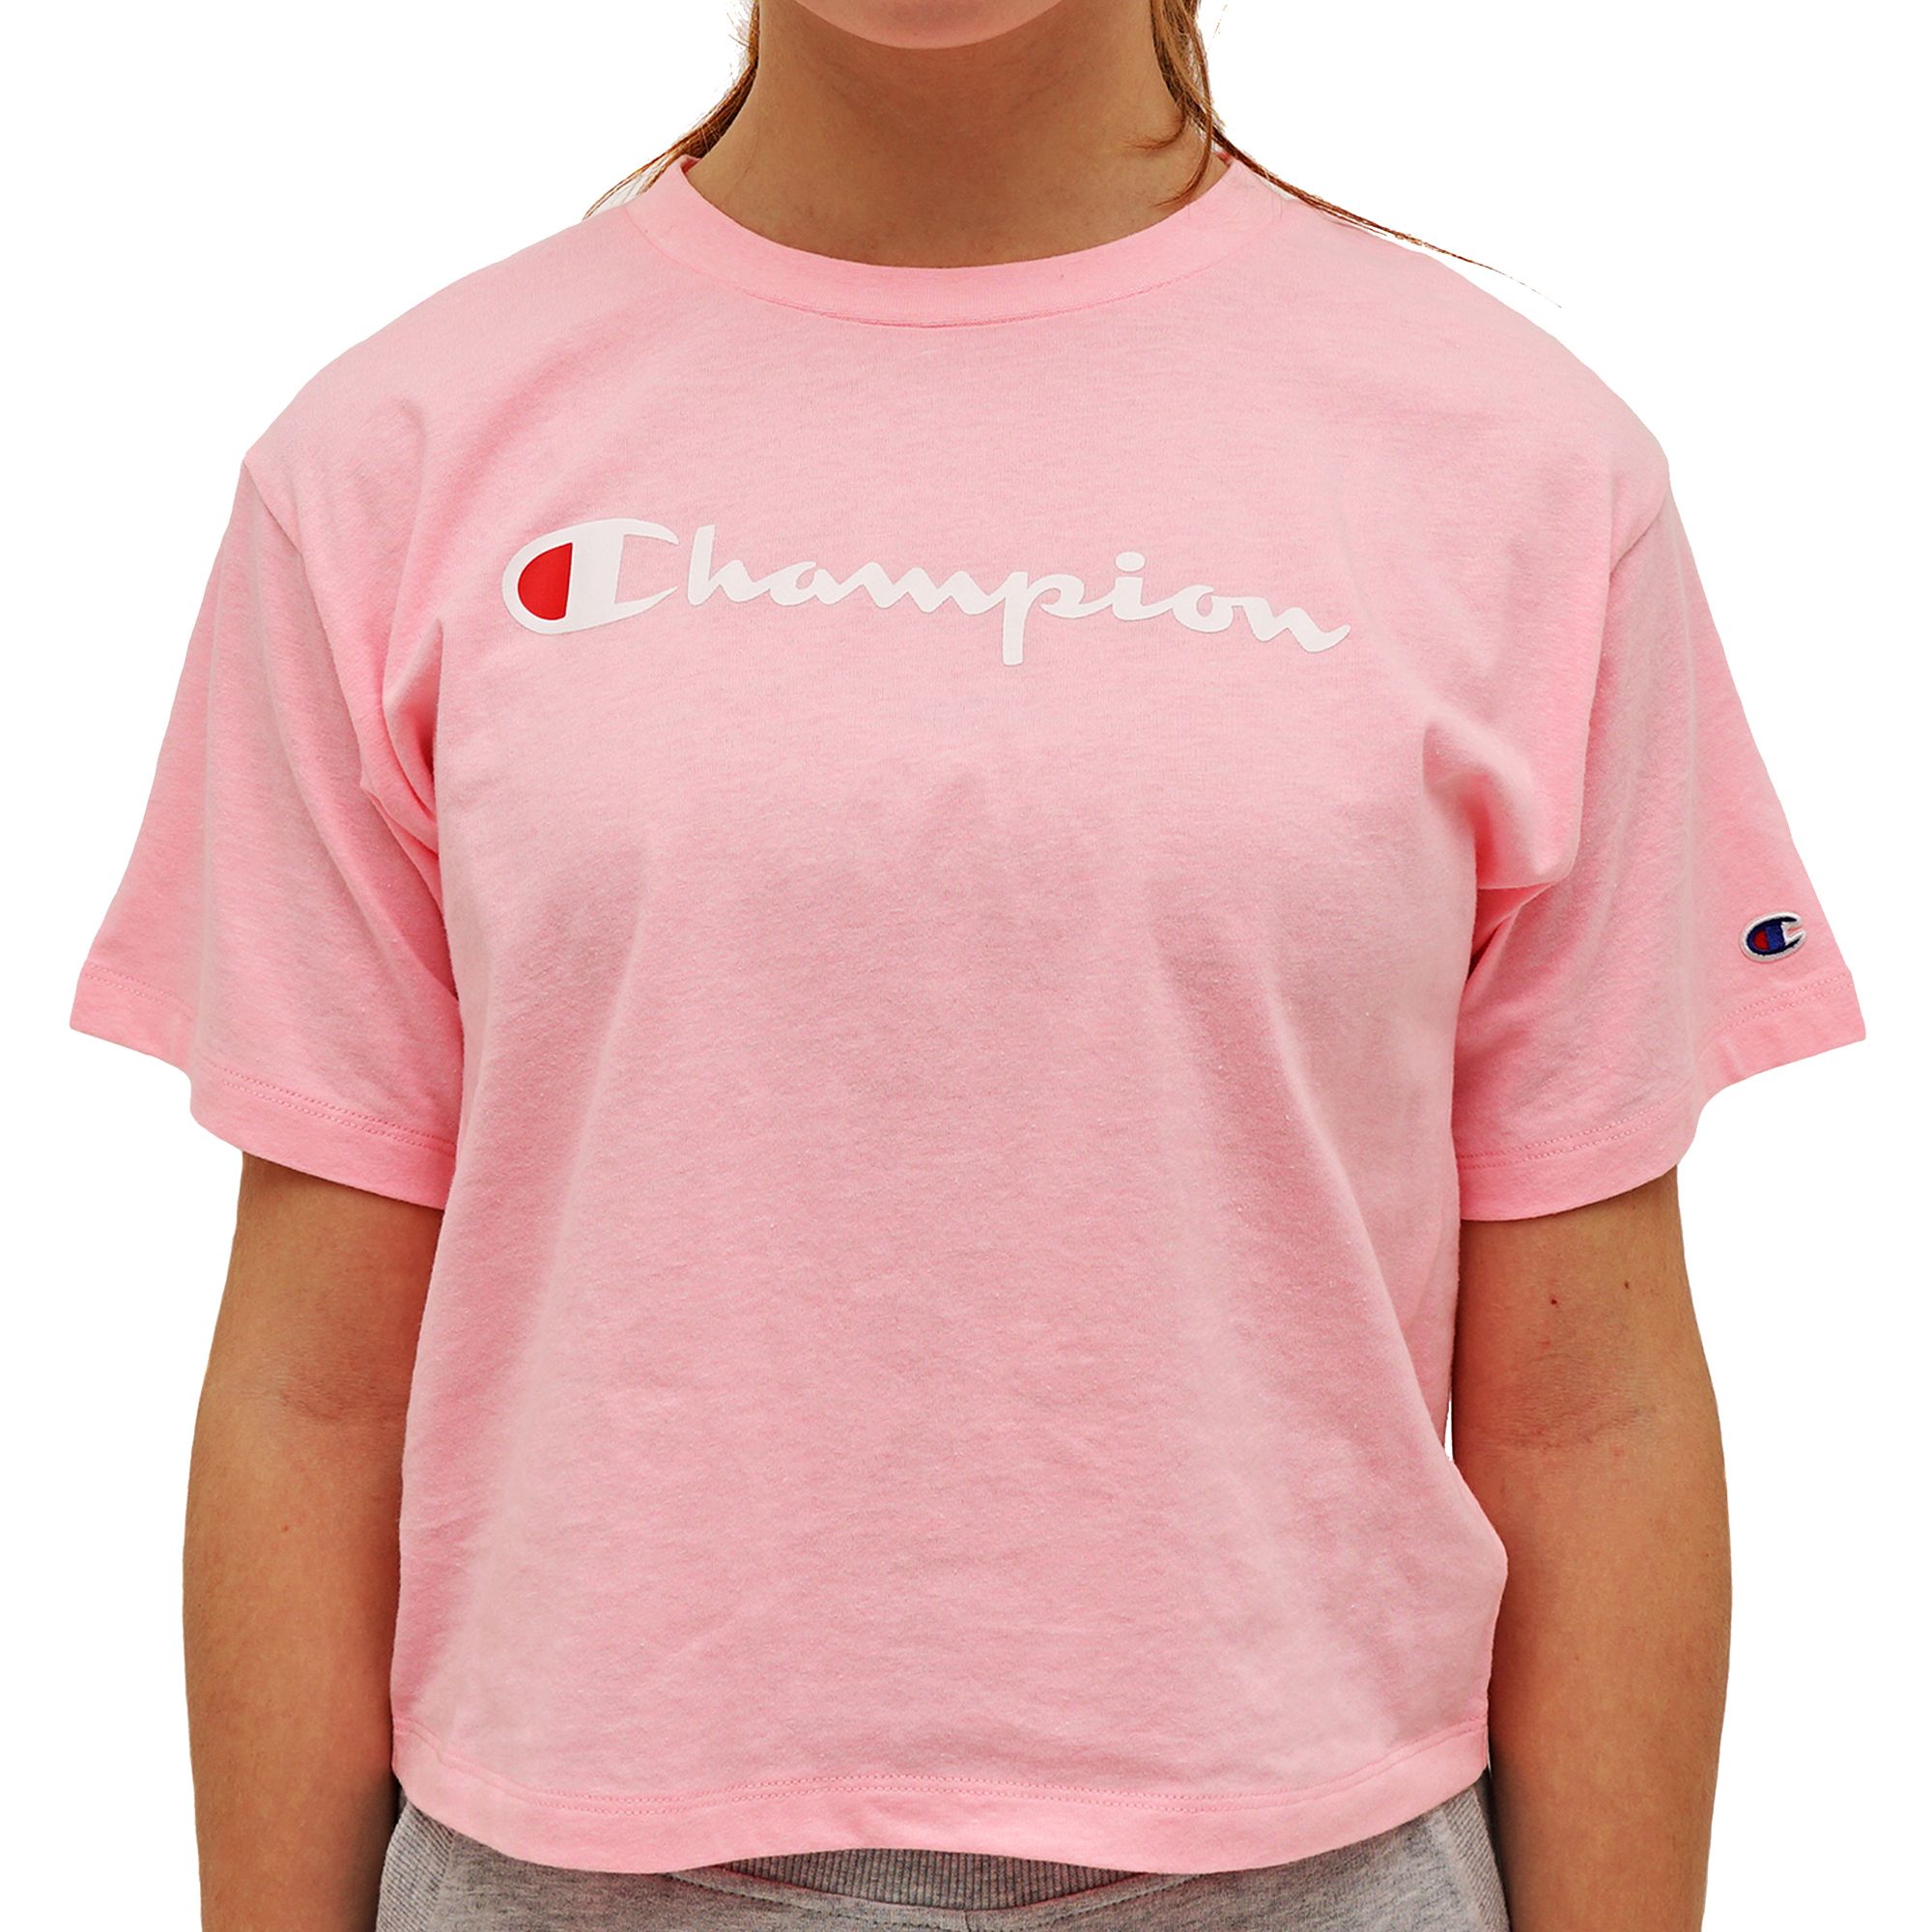 peach champion t shirt